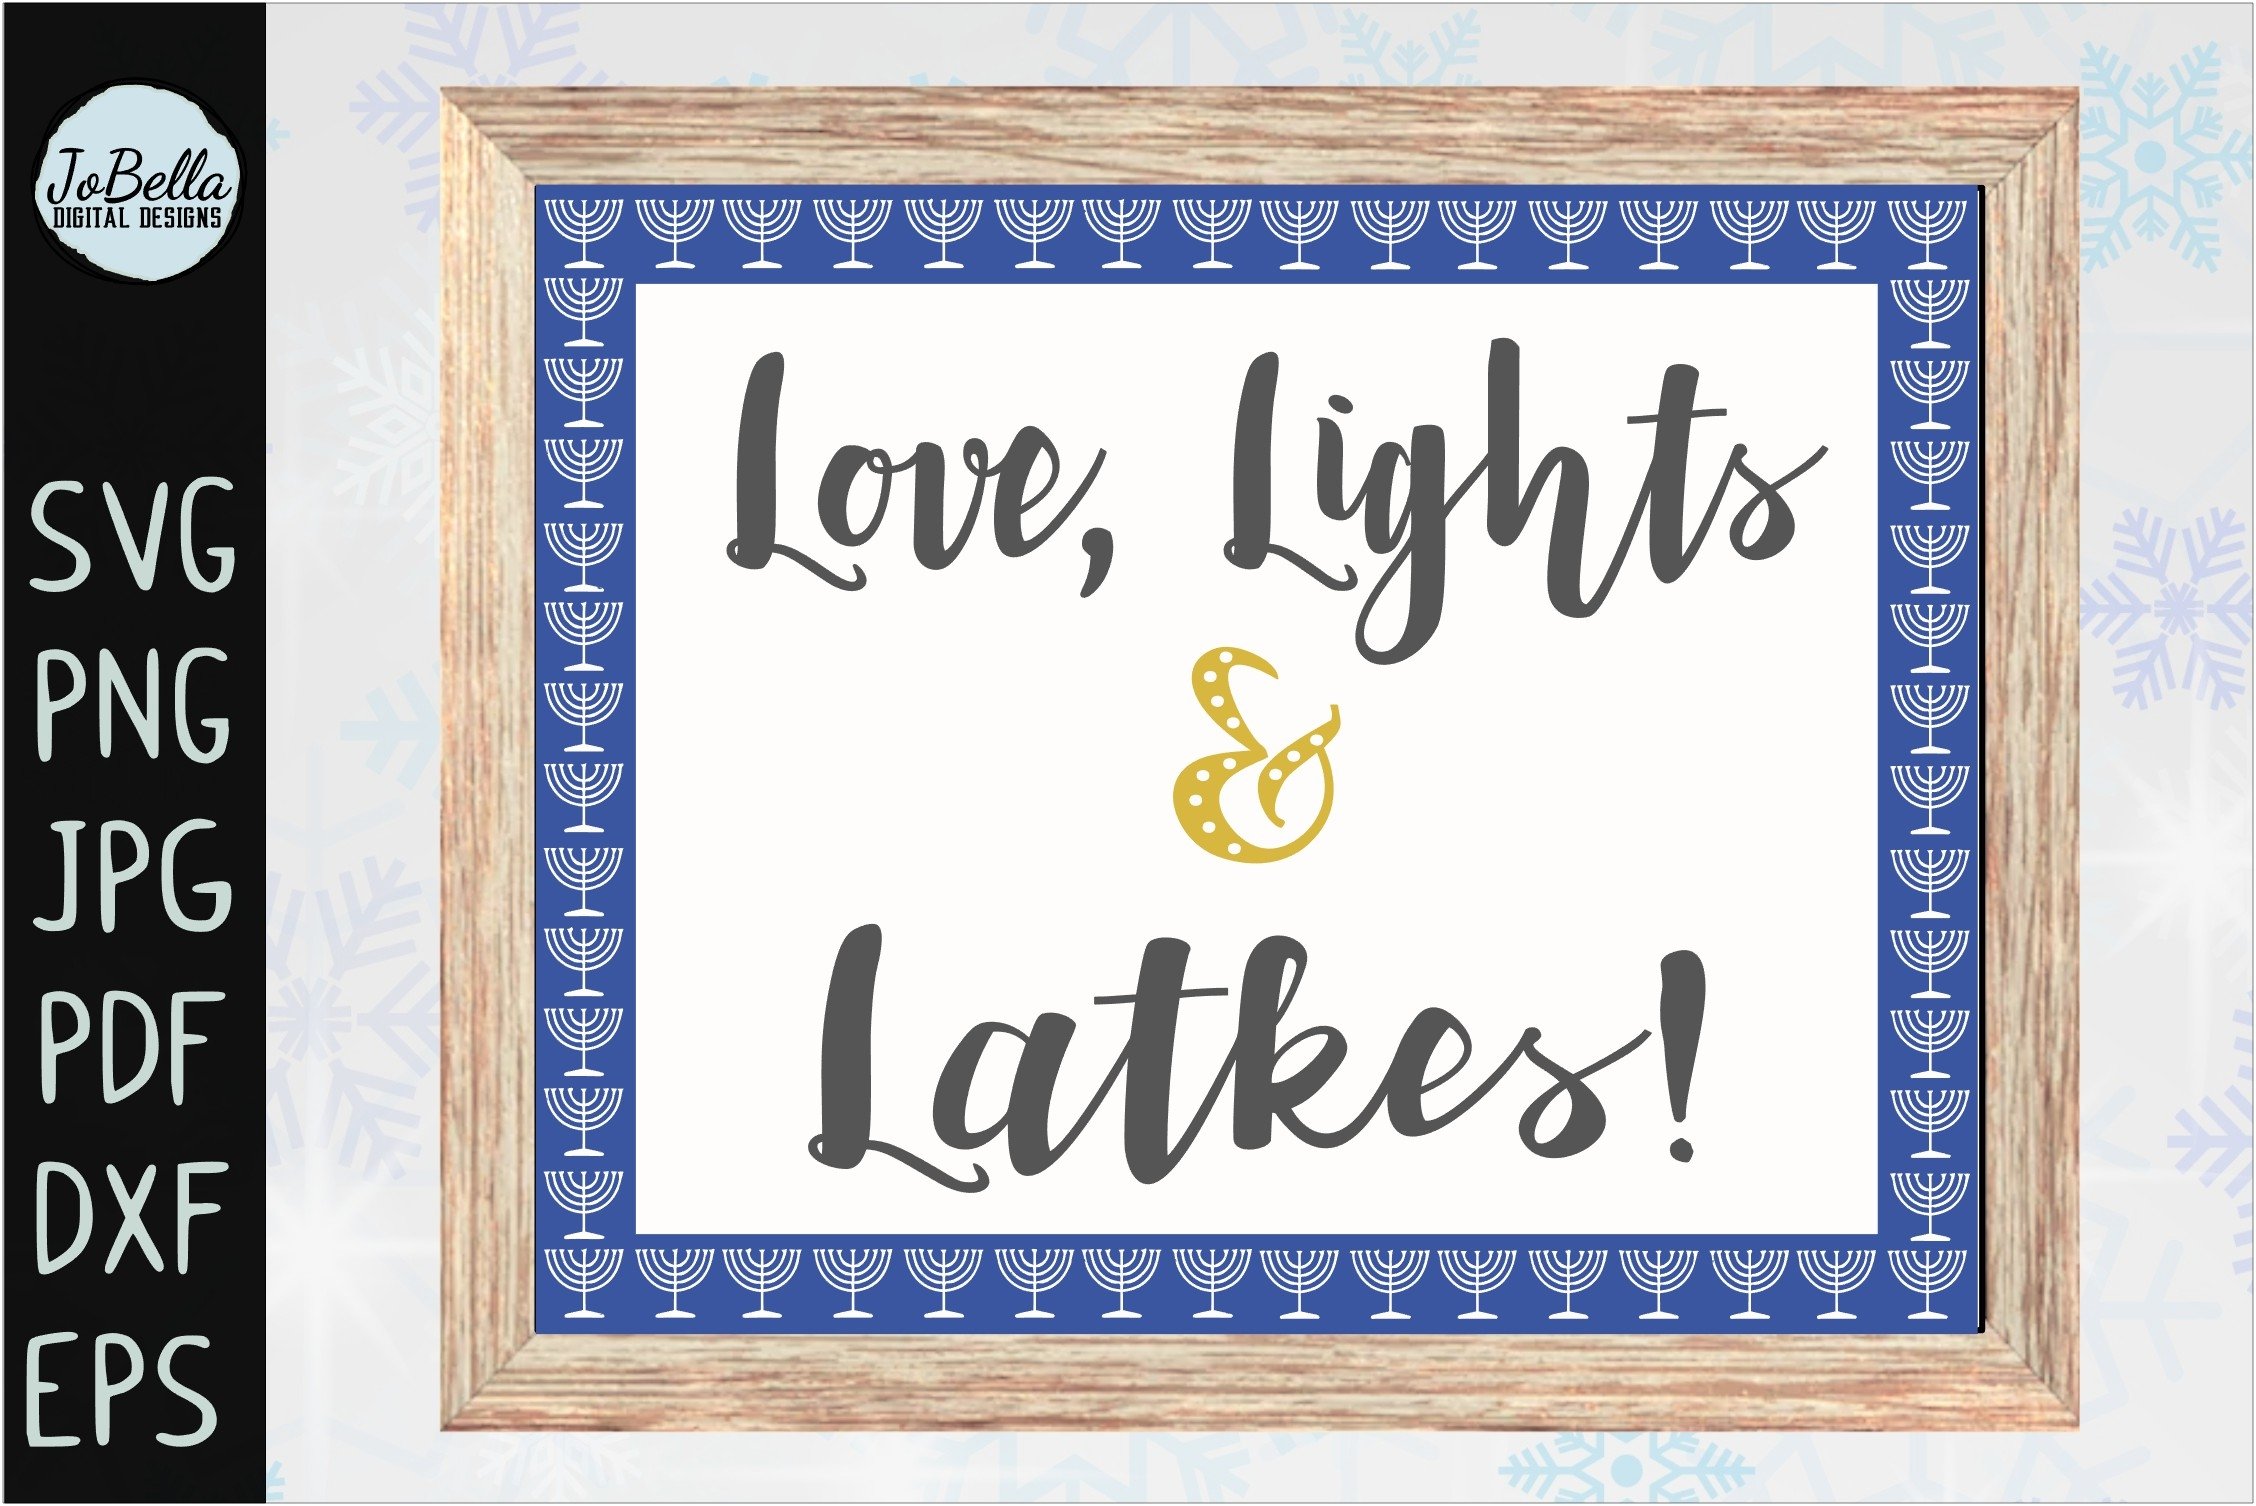 The lettering "Love, Lights Latkes".